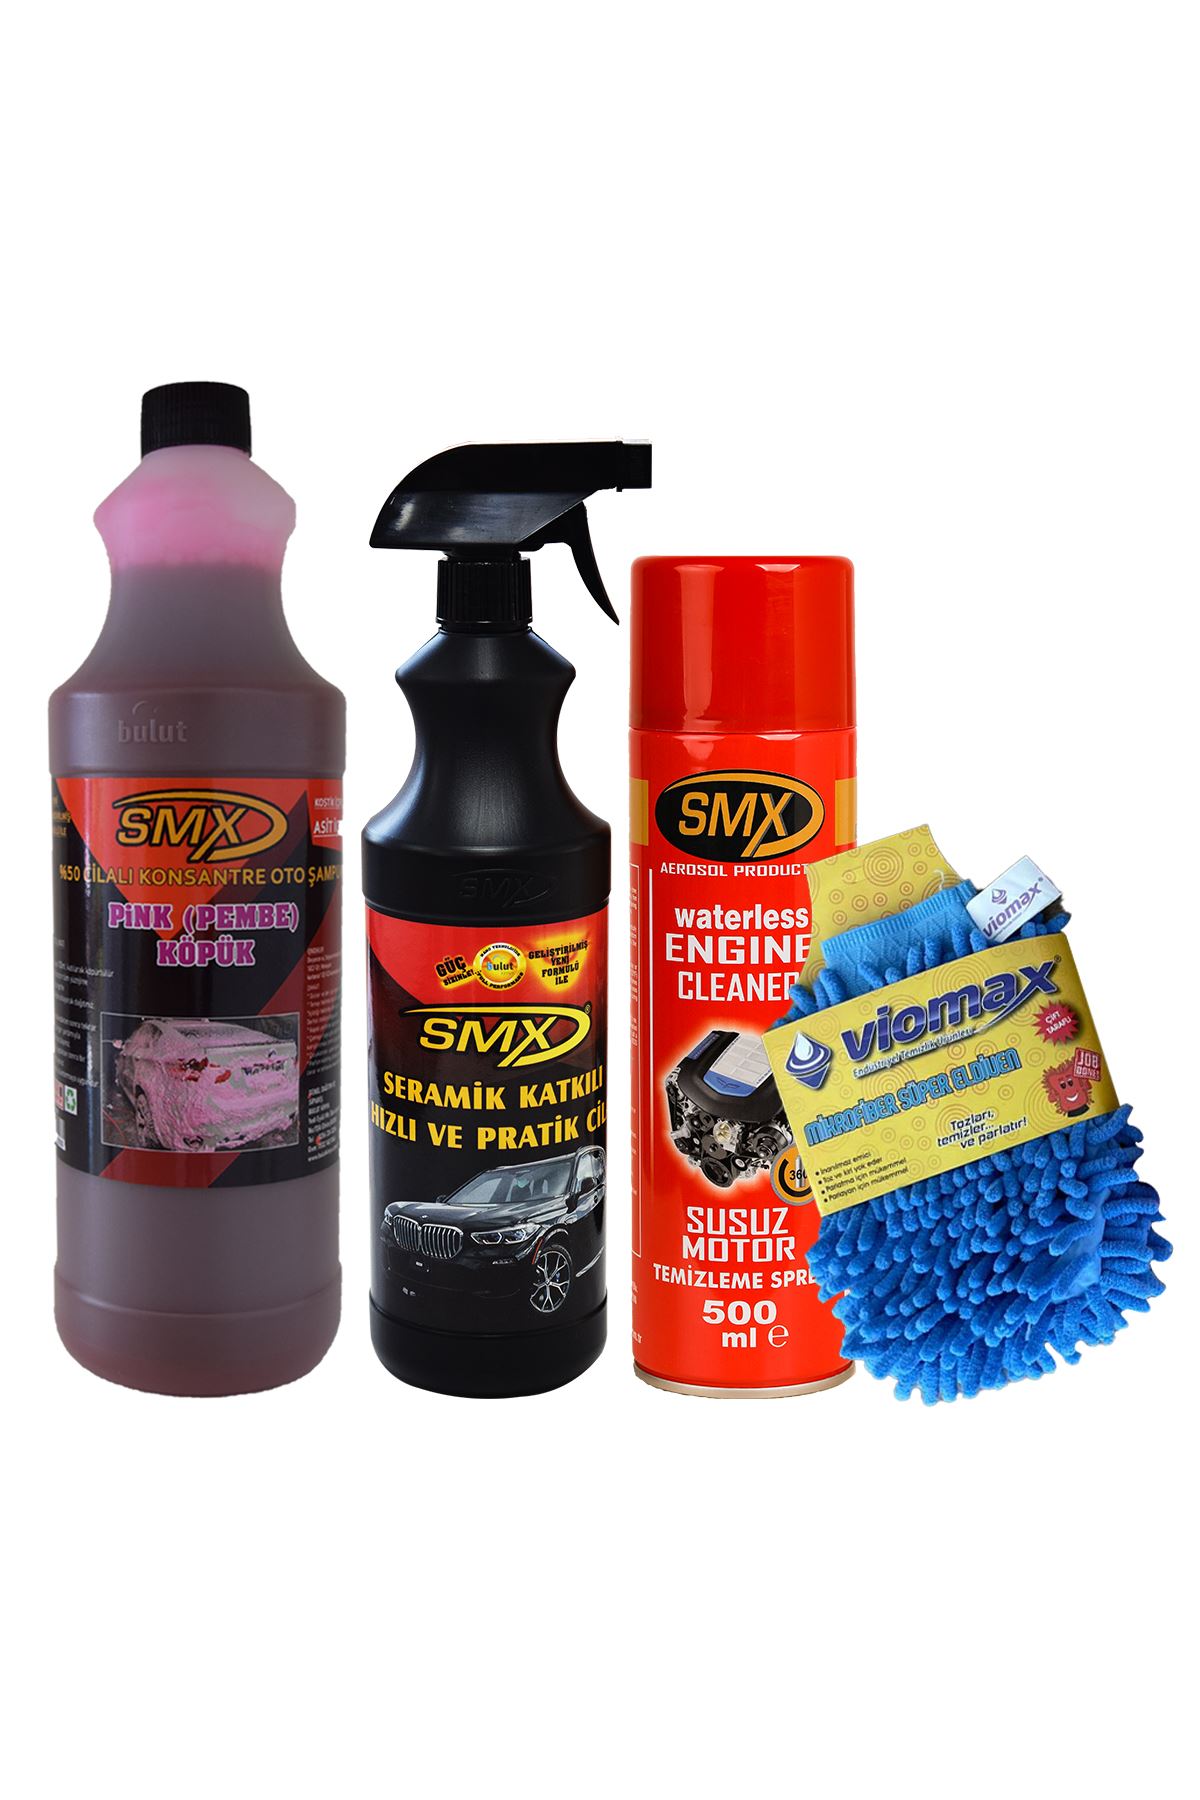 SMX %50 Cilalı Pink Oto Şampuanı /  Seramik Katkılı Hızlı Ve Pratik Cila / SMX Susuz Motor Temizleme Ve Koruma Spreyi / Mikrofiber Oto Yıkama Eldiveni